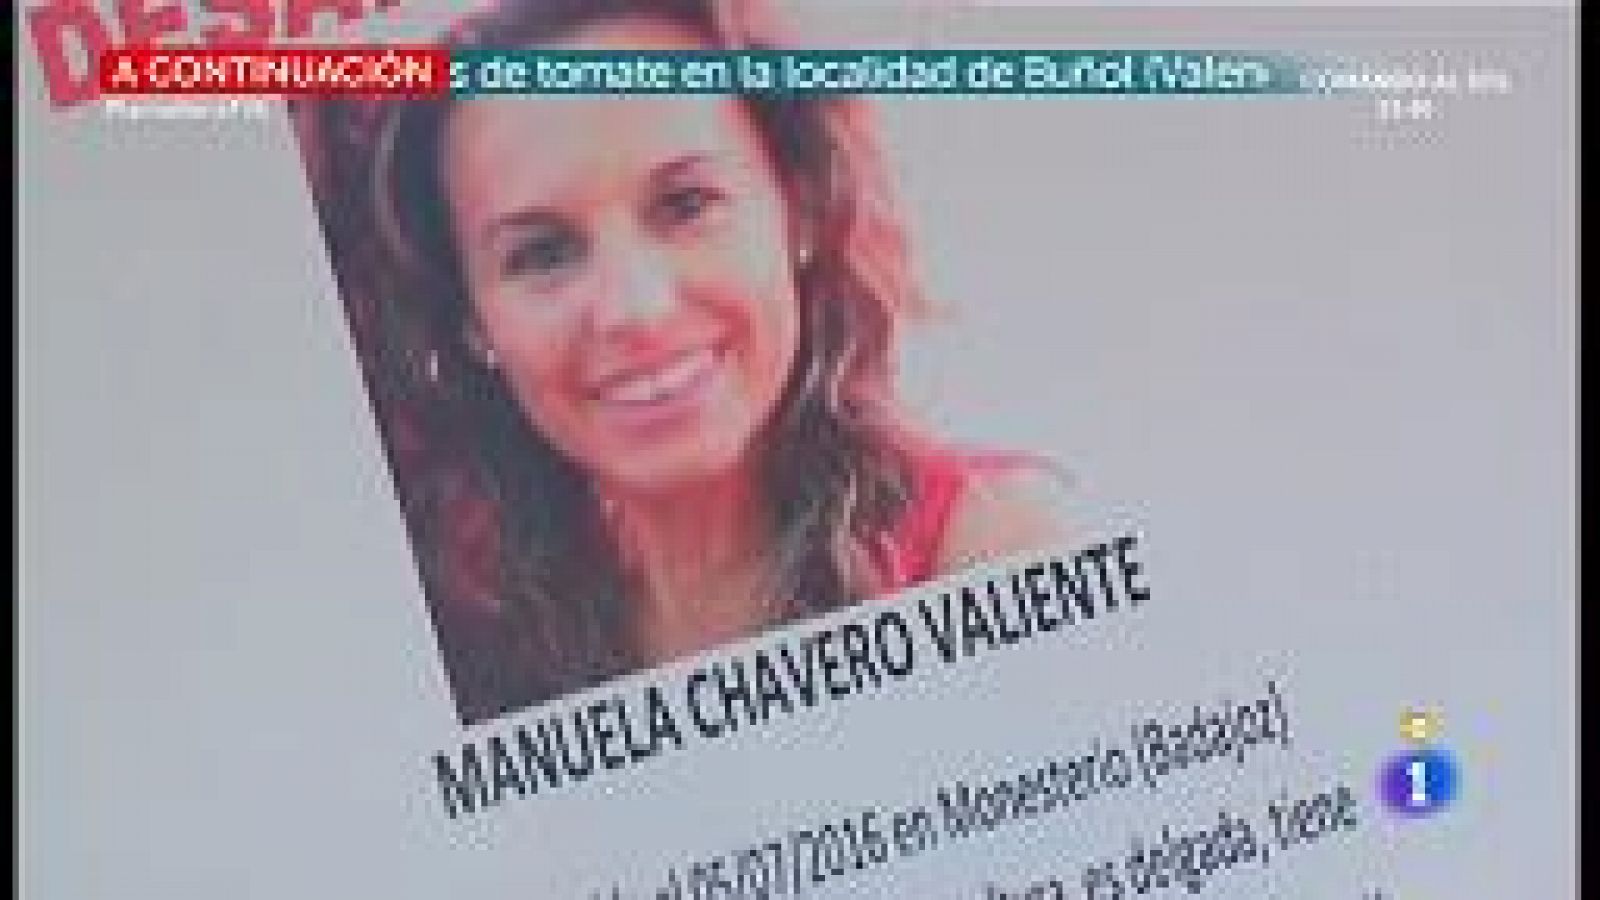 Recogen más pruebas en el caso de Manuela Chavero